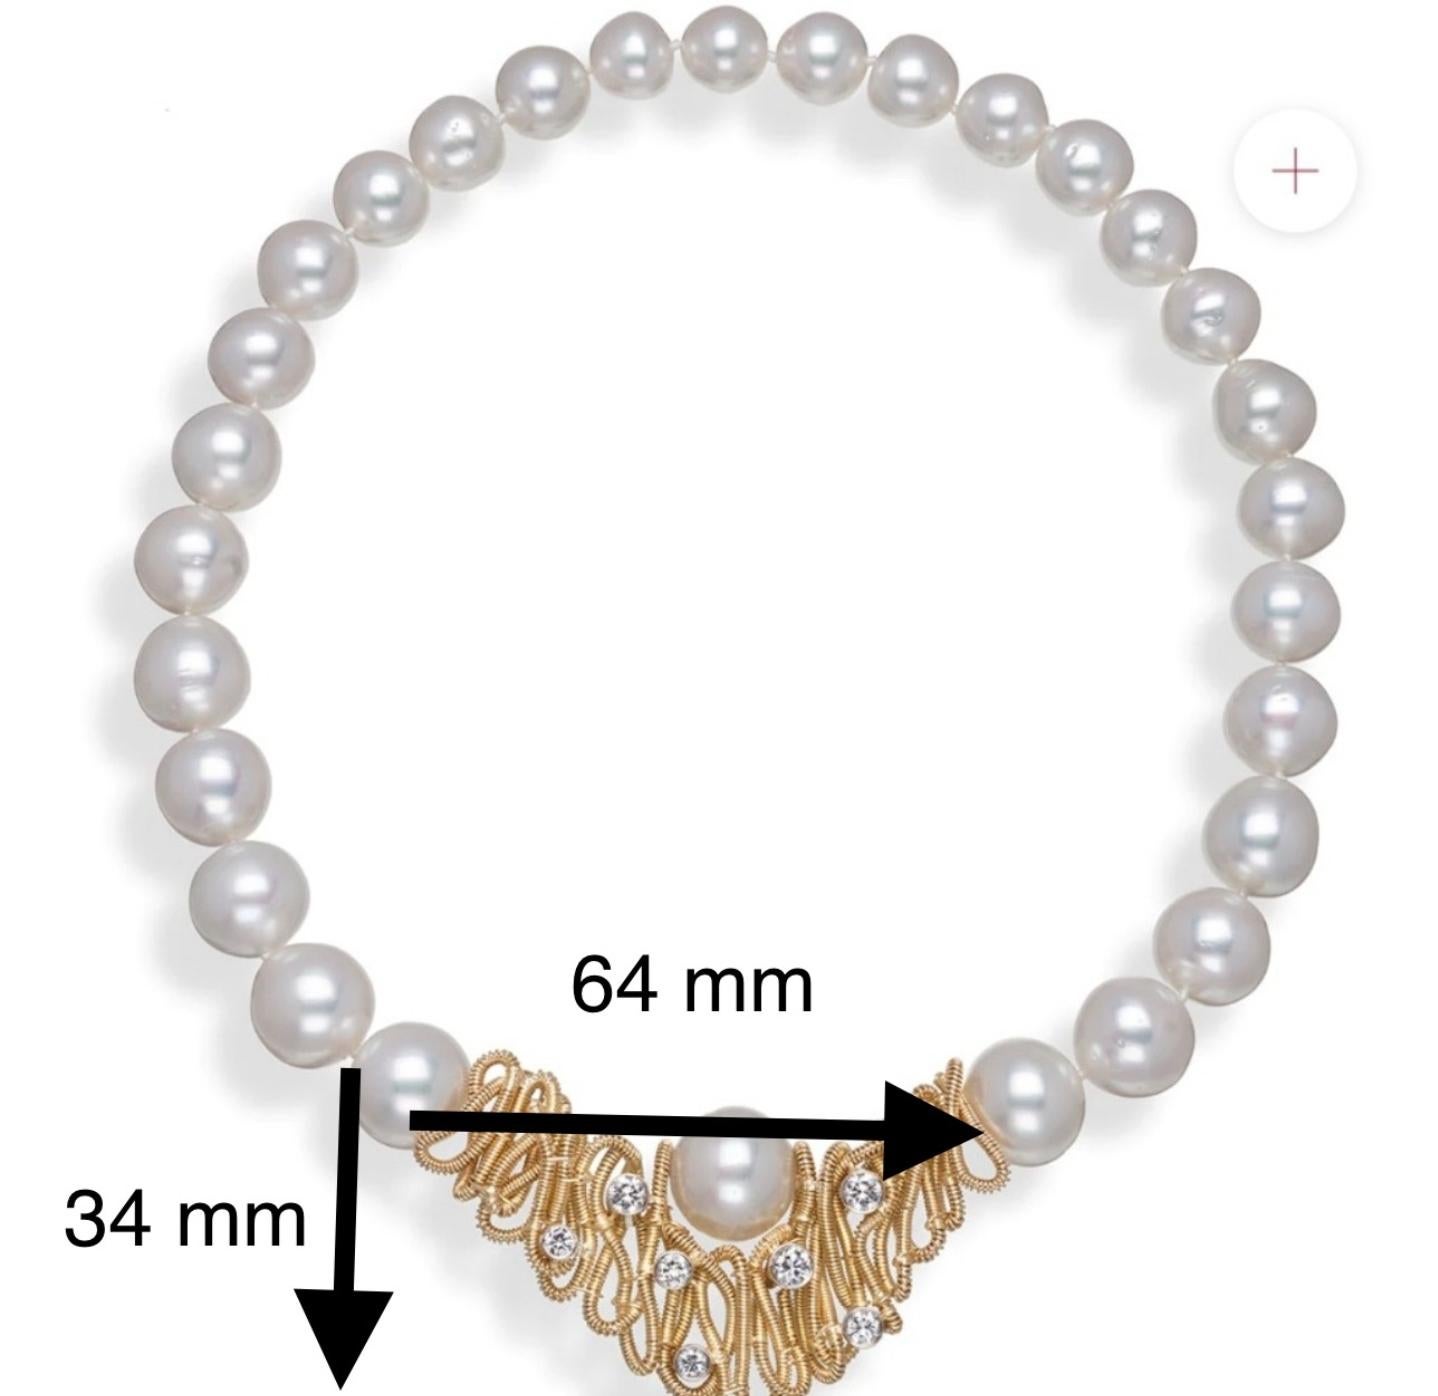 Diese exquisite, raffinierte Halskette ist eine klassische Kombination aus glänzenden Südseeperlen und Glorias charakteristischer Spiralarbeit aus 18 Karat Gelbgold. Diese harmonische Verbindung wird von sieben (7) strahlend funkelnden Diamanten